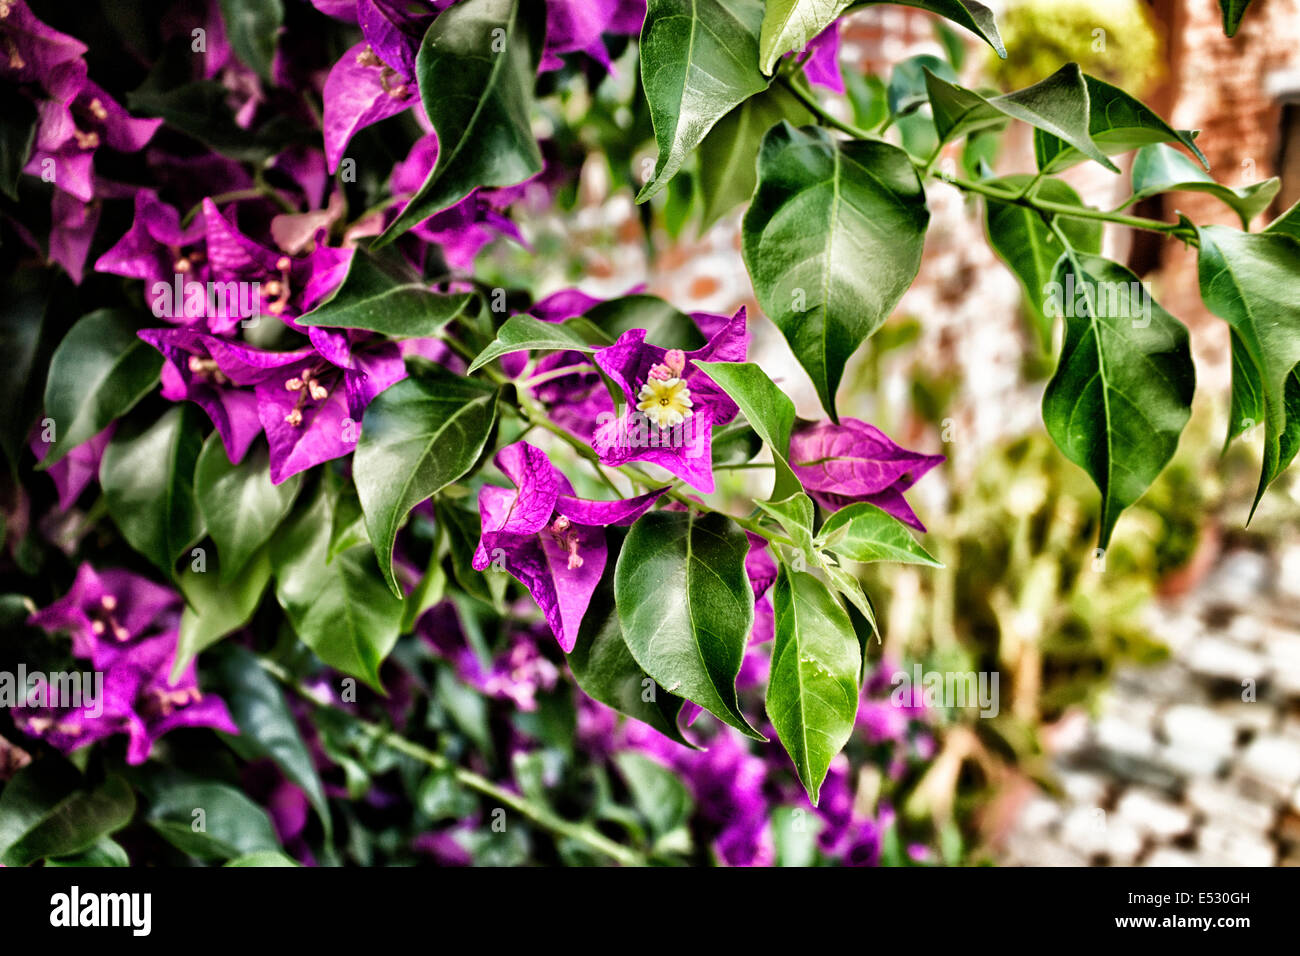 Bougainvillea glabra : feuille vert foncé, brillant et glorieux bractées florales magenta. Banque D'Images